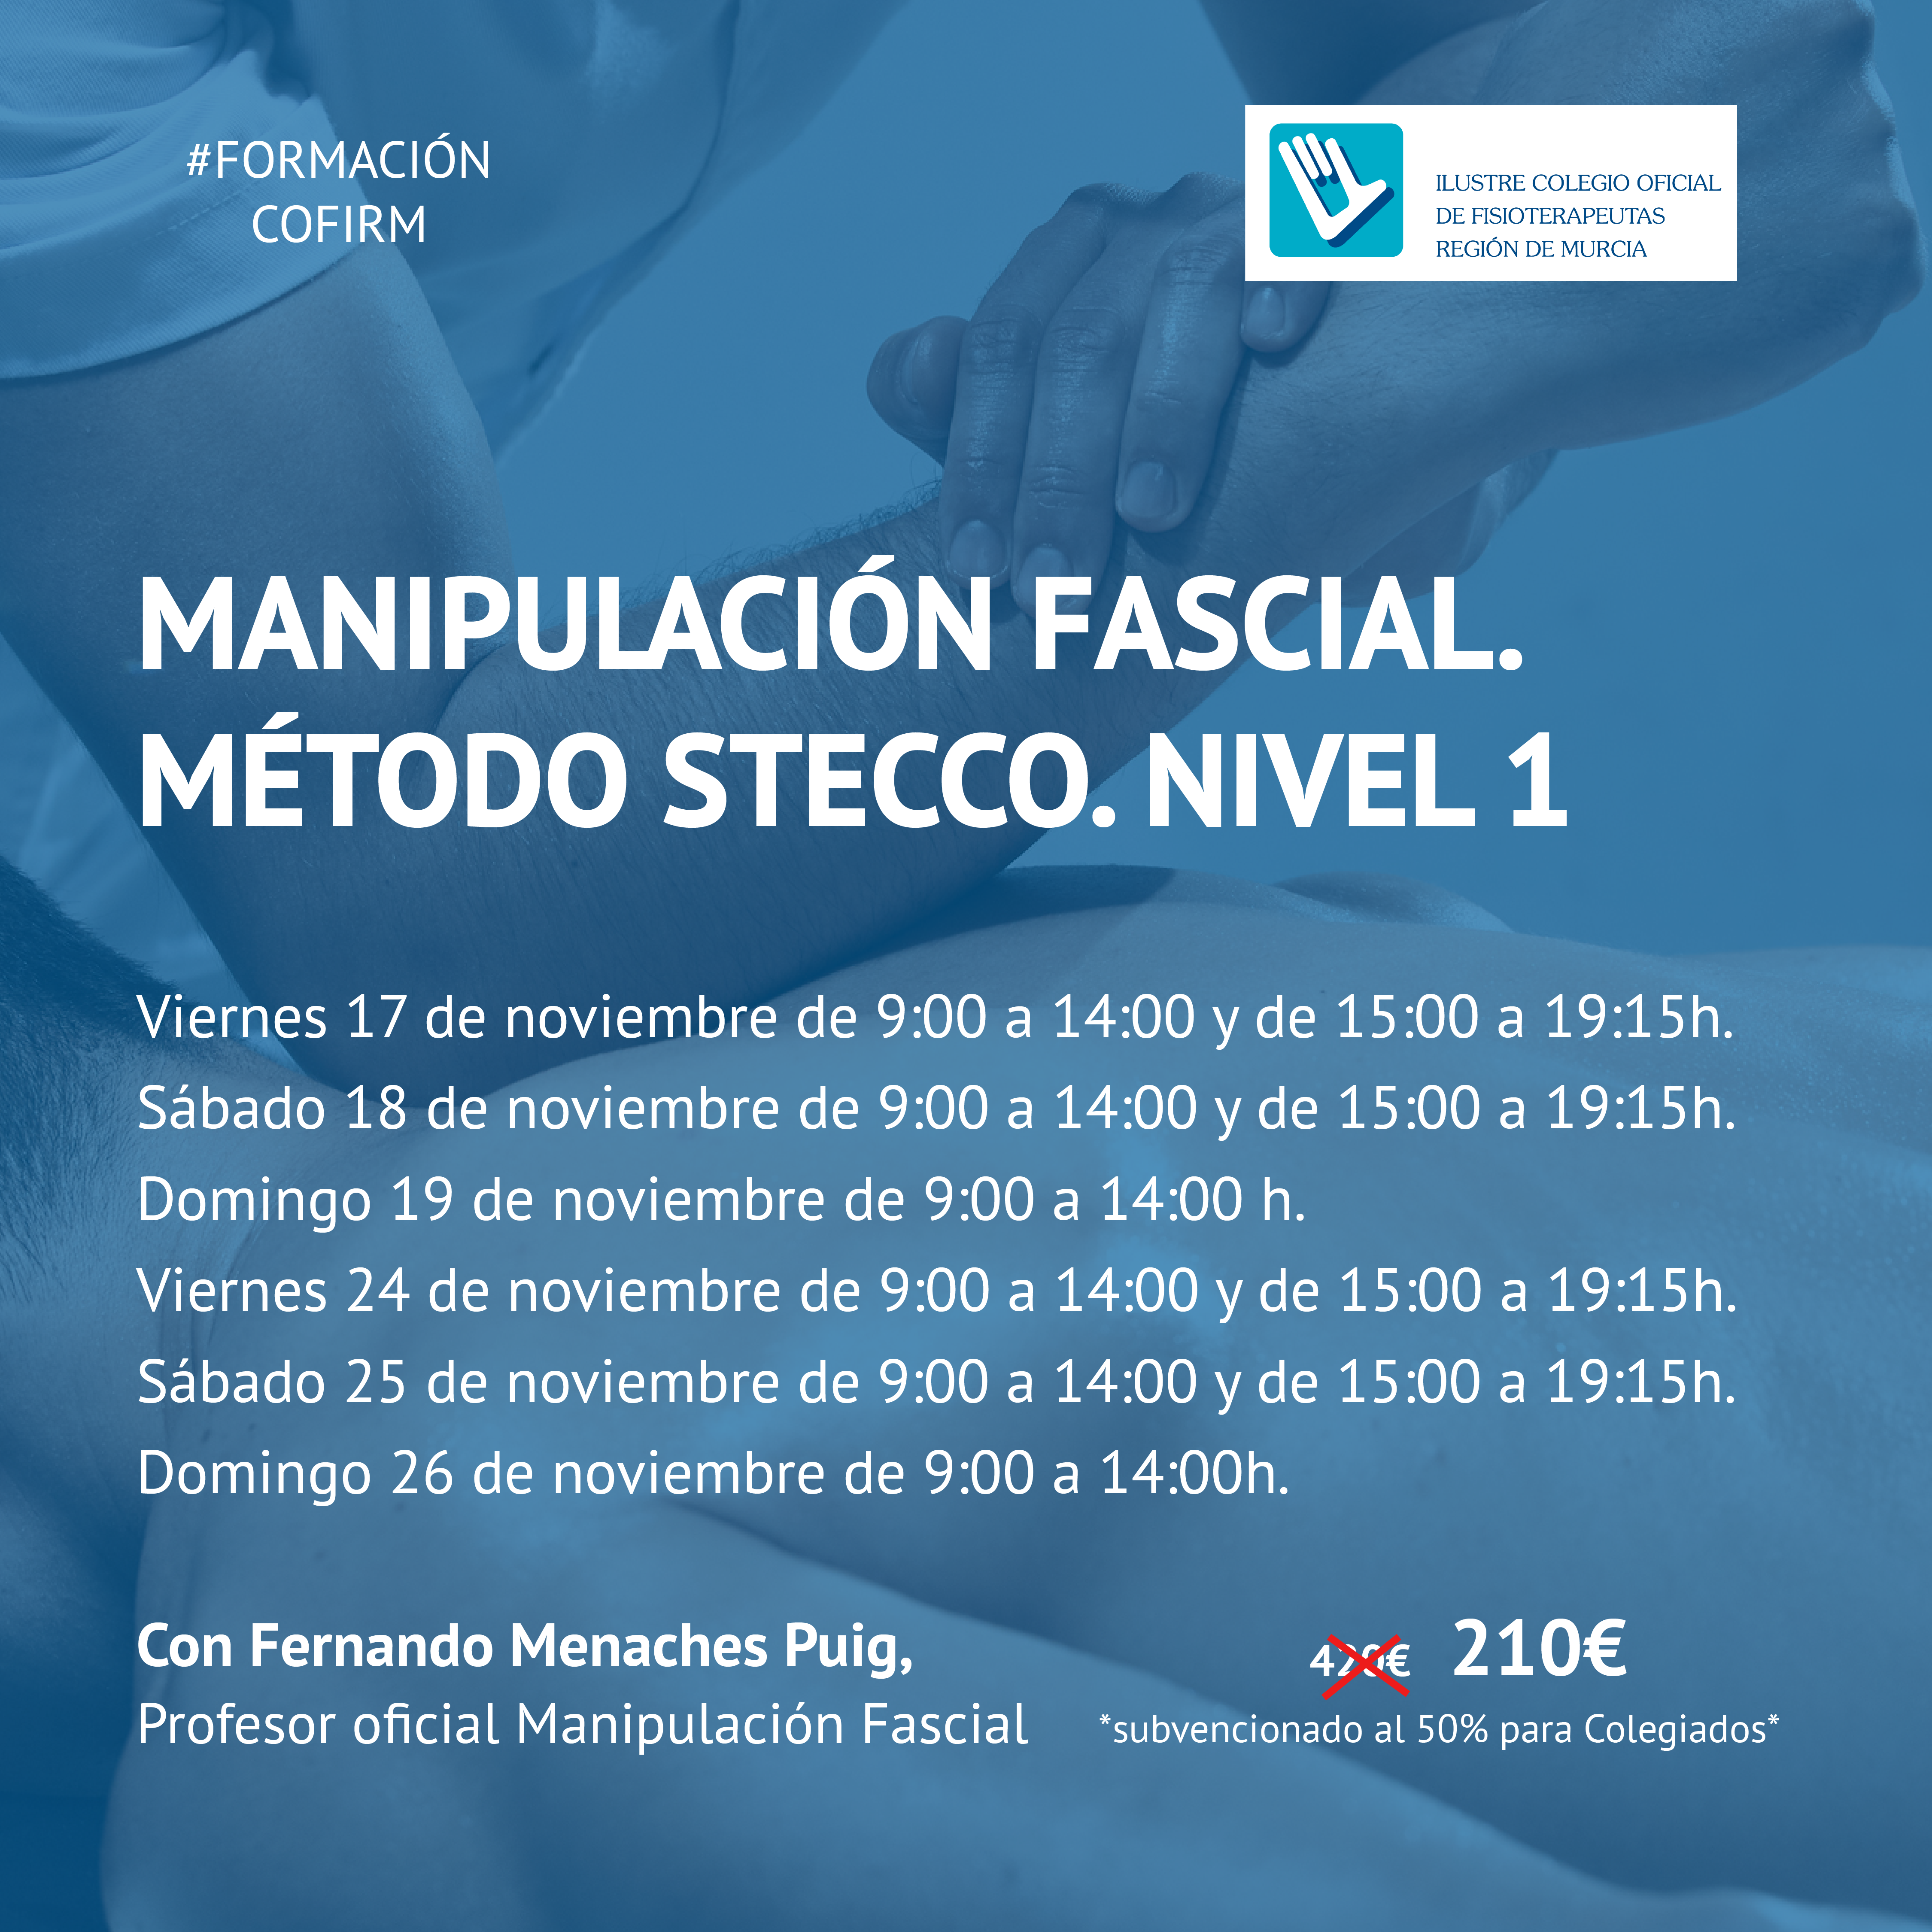 Manipulación fascial (Método Stecco). Nivel 1.